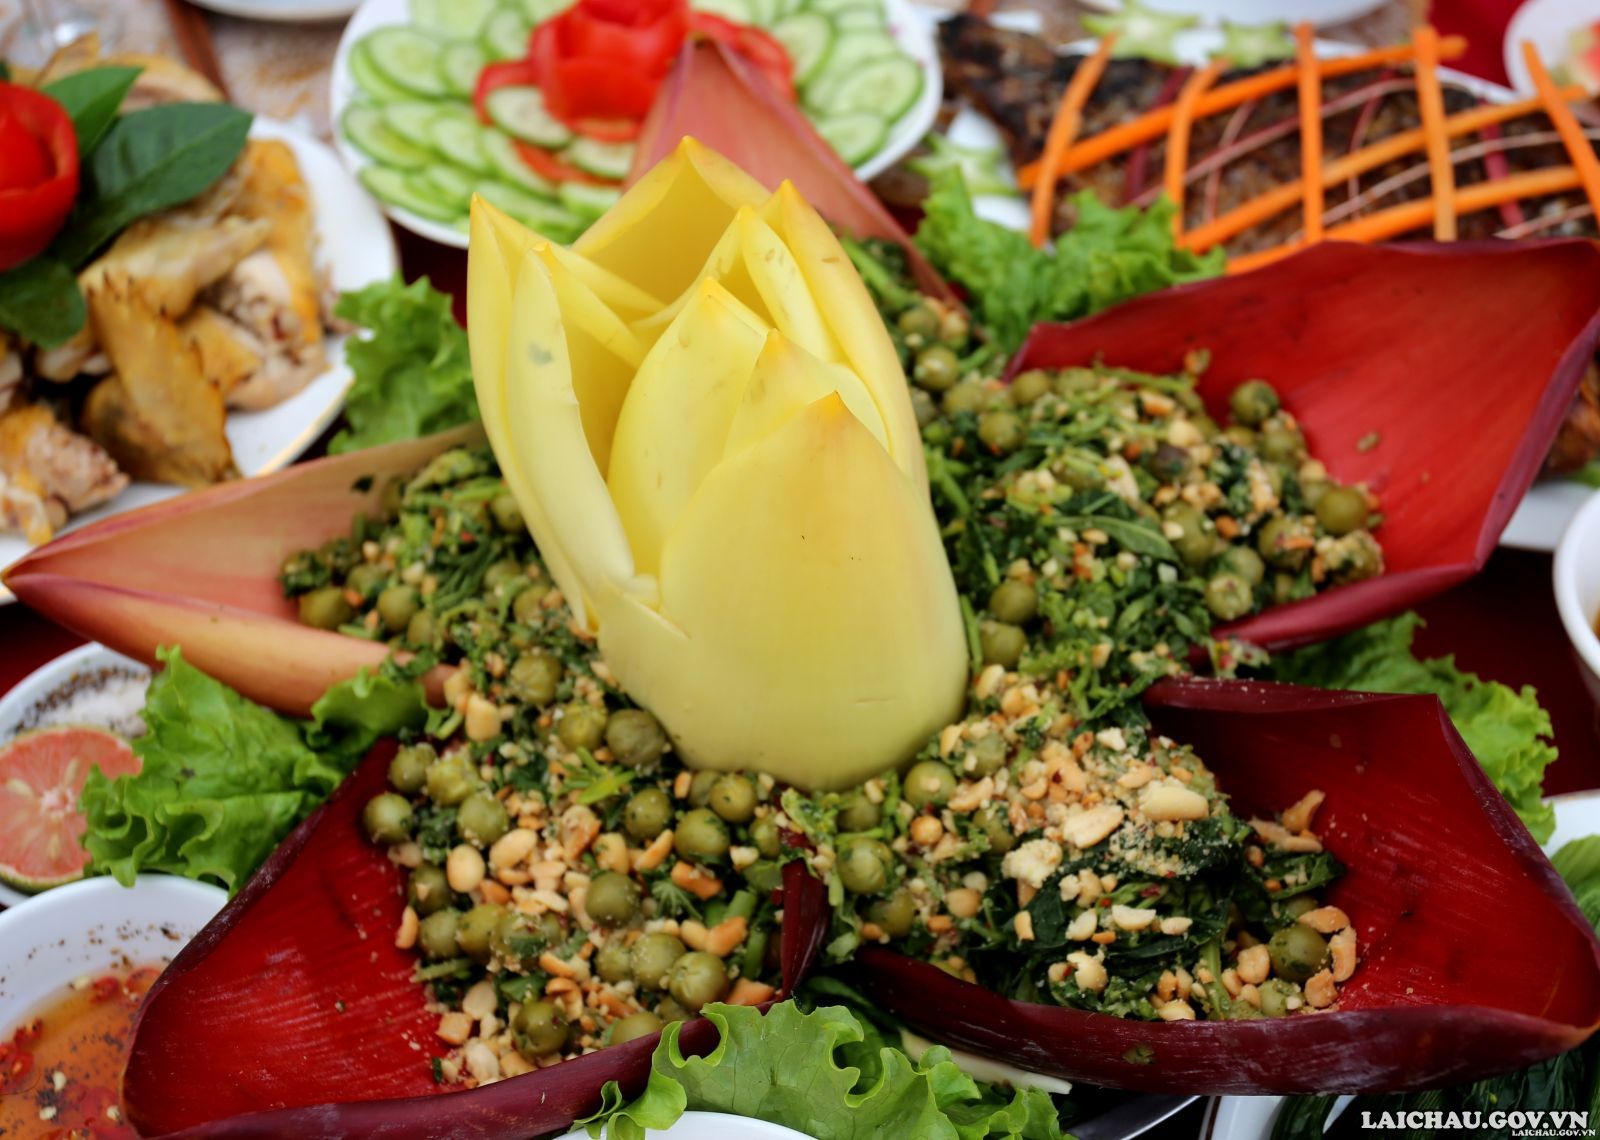 Người Thái ở Lai Châu rất tài tình trong chế biến món ăn. Chính vì vậy một loại hoa đắng ngắt như hoa đu đủ bị nhiều người bỏ đi lại có thể trở thành món nộm lạ miệng. Nộm hoa đu đủ với rau sắn và cà rừng là món ăn dân giã nhưng rất ngon và hấp dẫn.